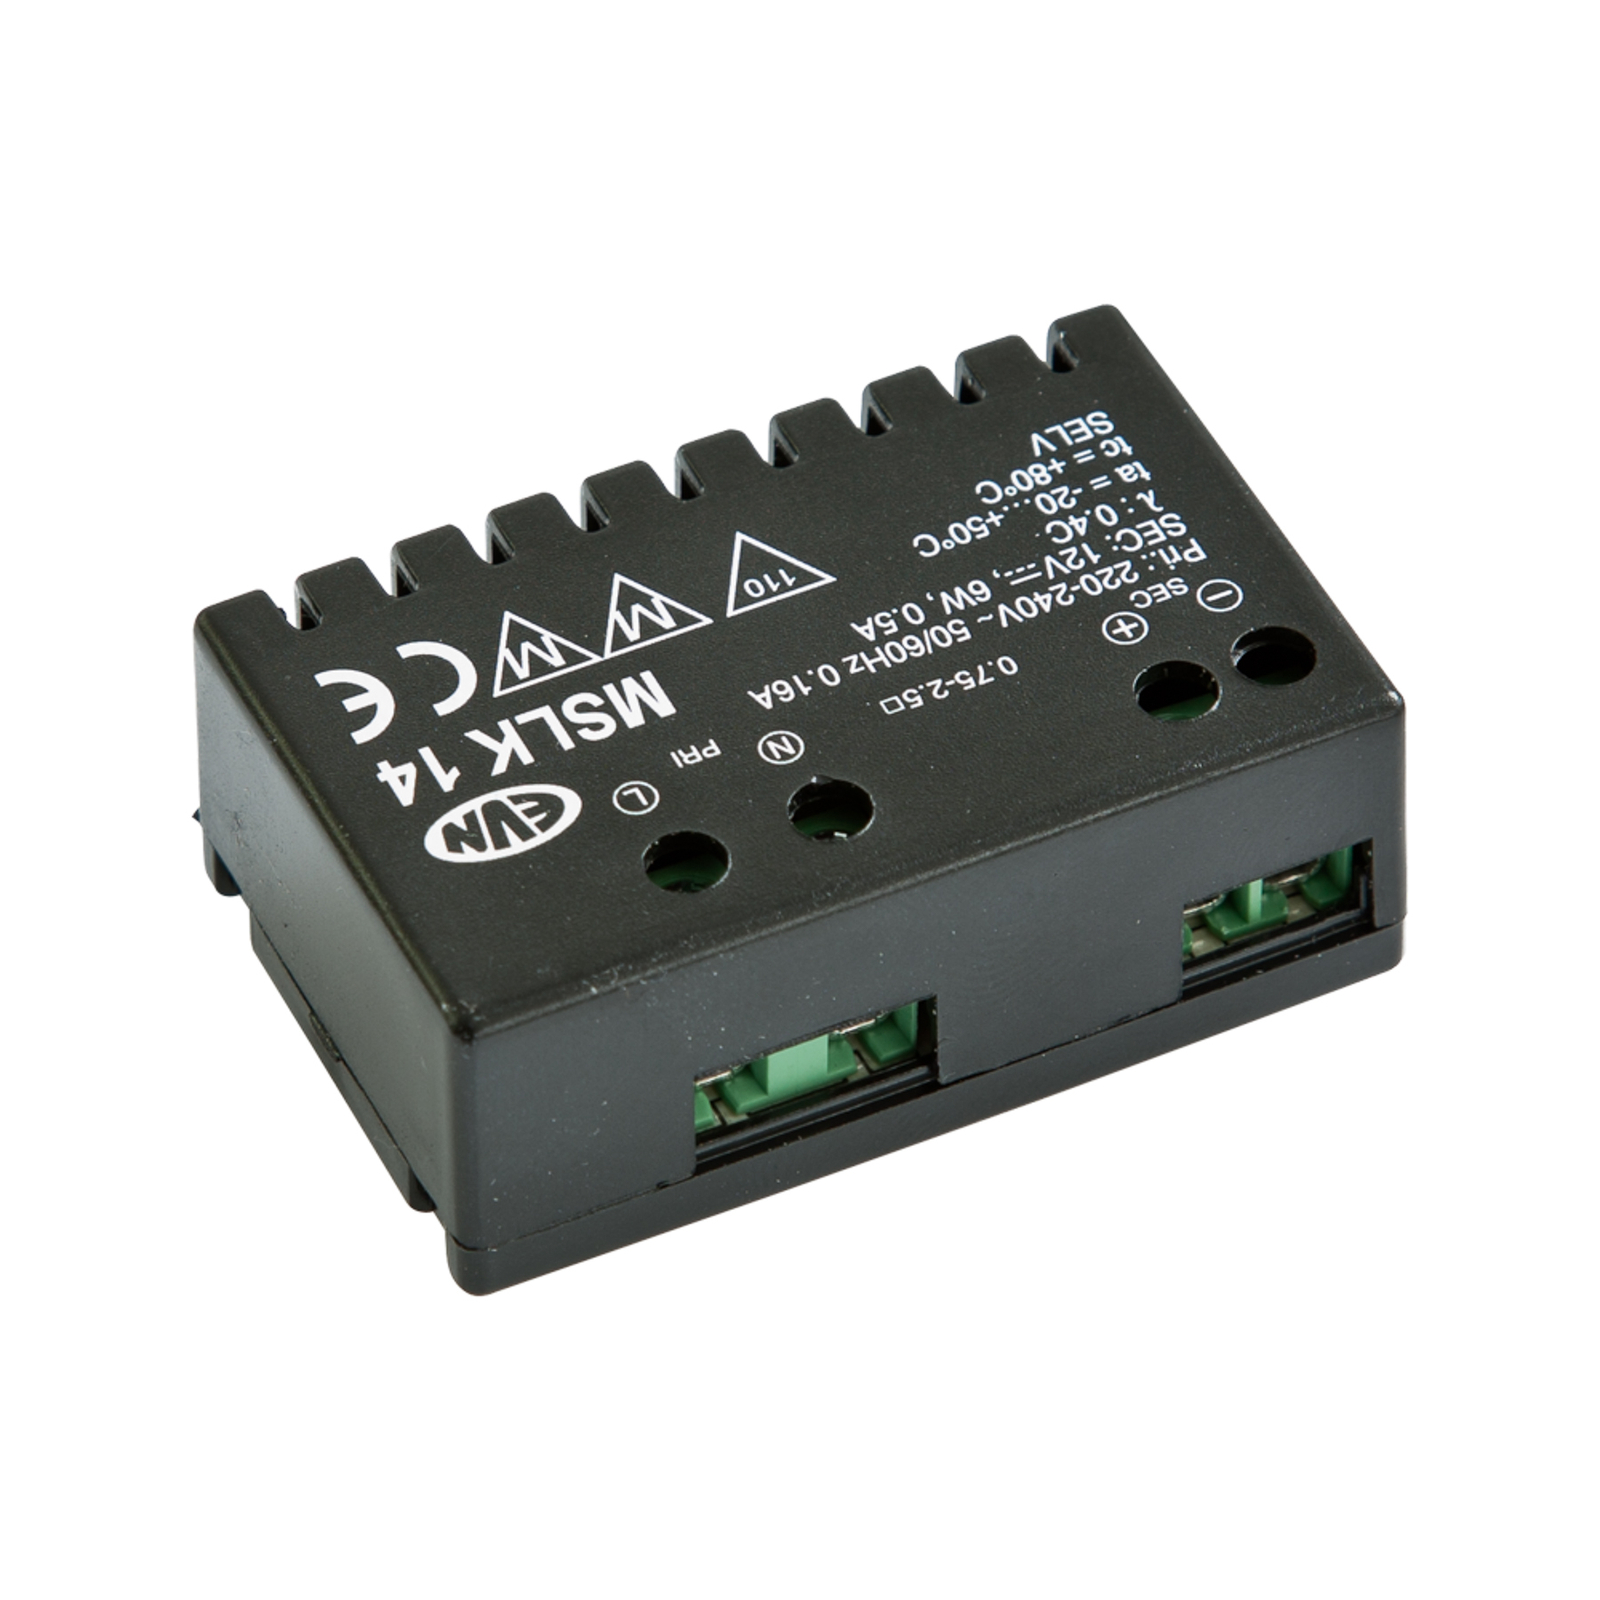 Nätaggregat 12V/DC 0,1-6W, IP20, 100-240V/AC